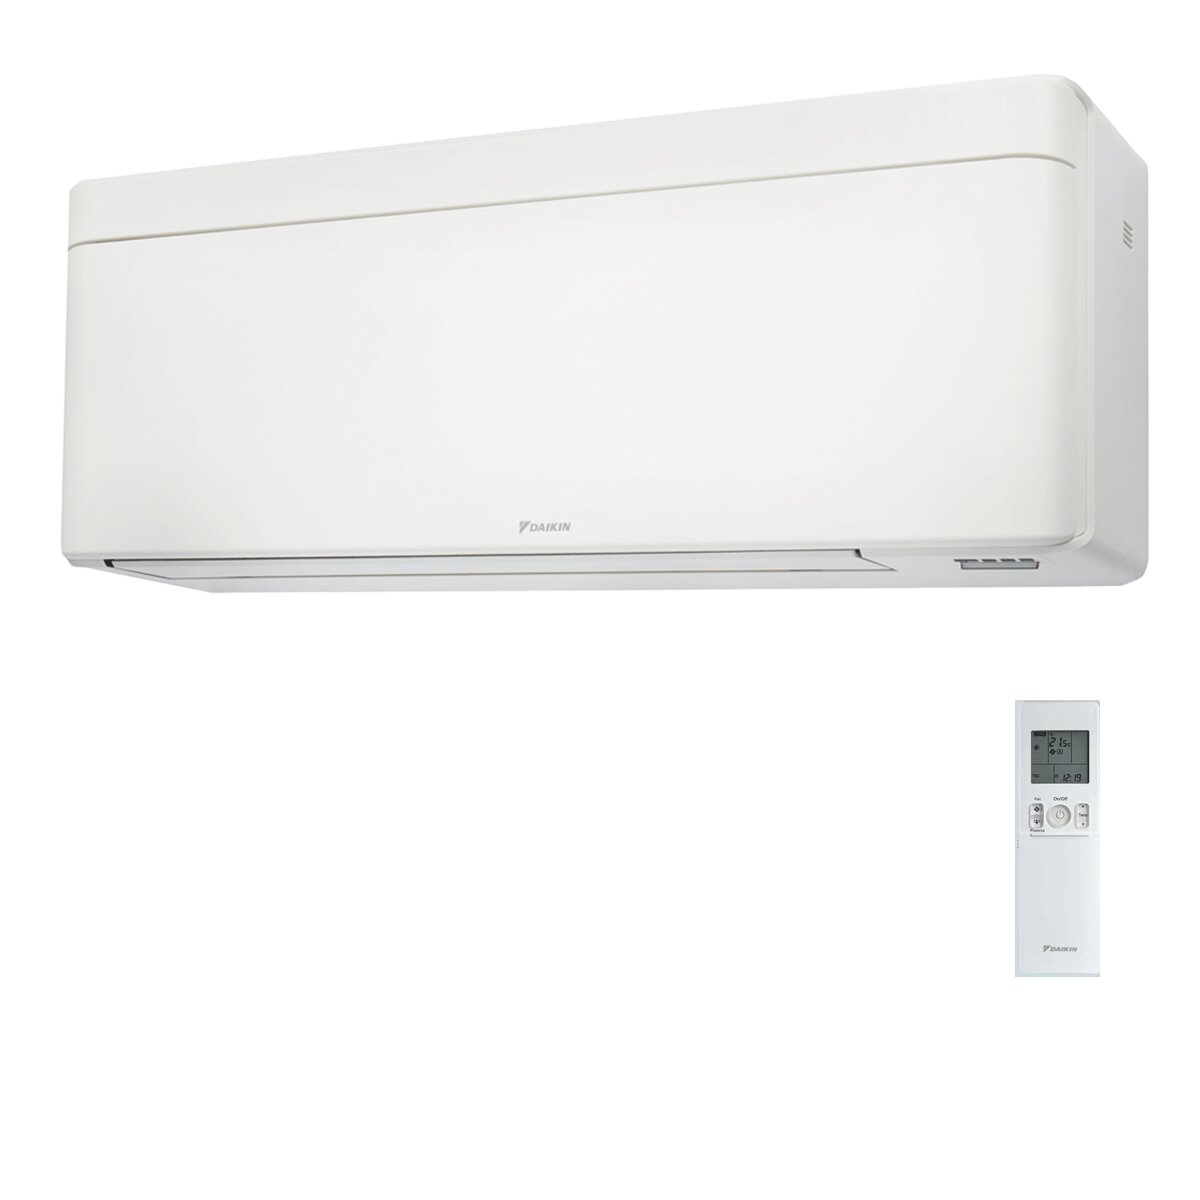 Daikin Stylish White trial split air conditioner 7000+9000+12000 BTU inverter A+++ wifi external unit 5 kW